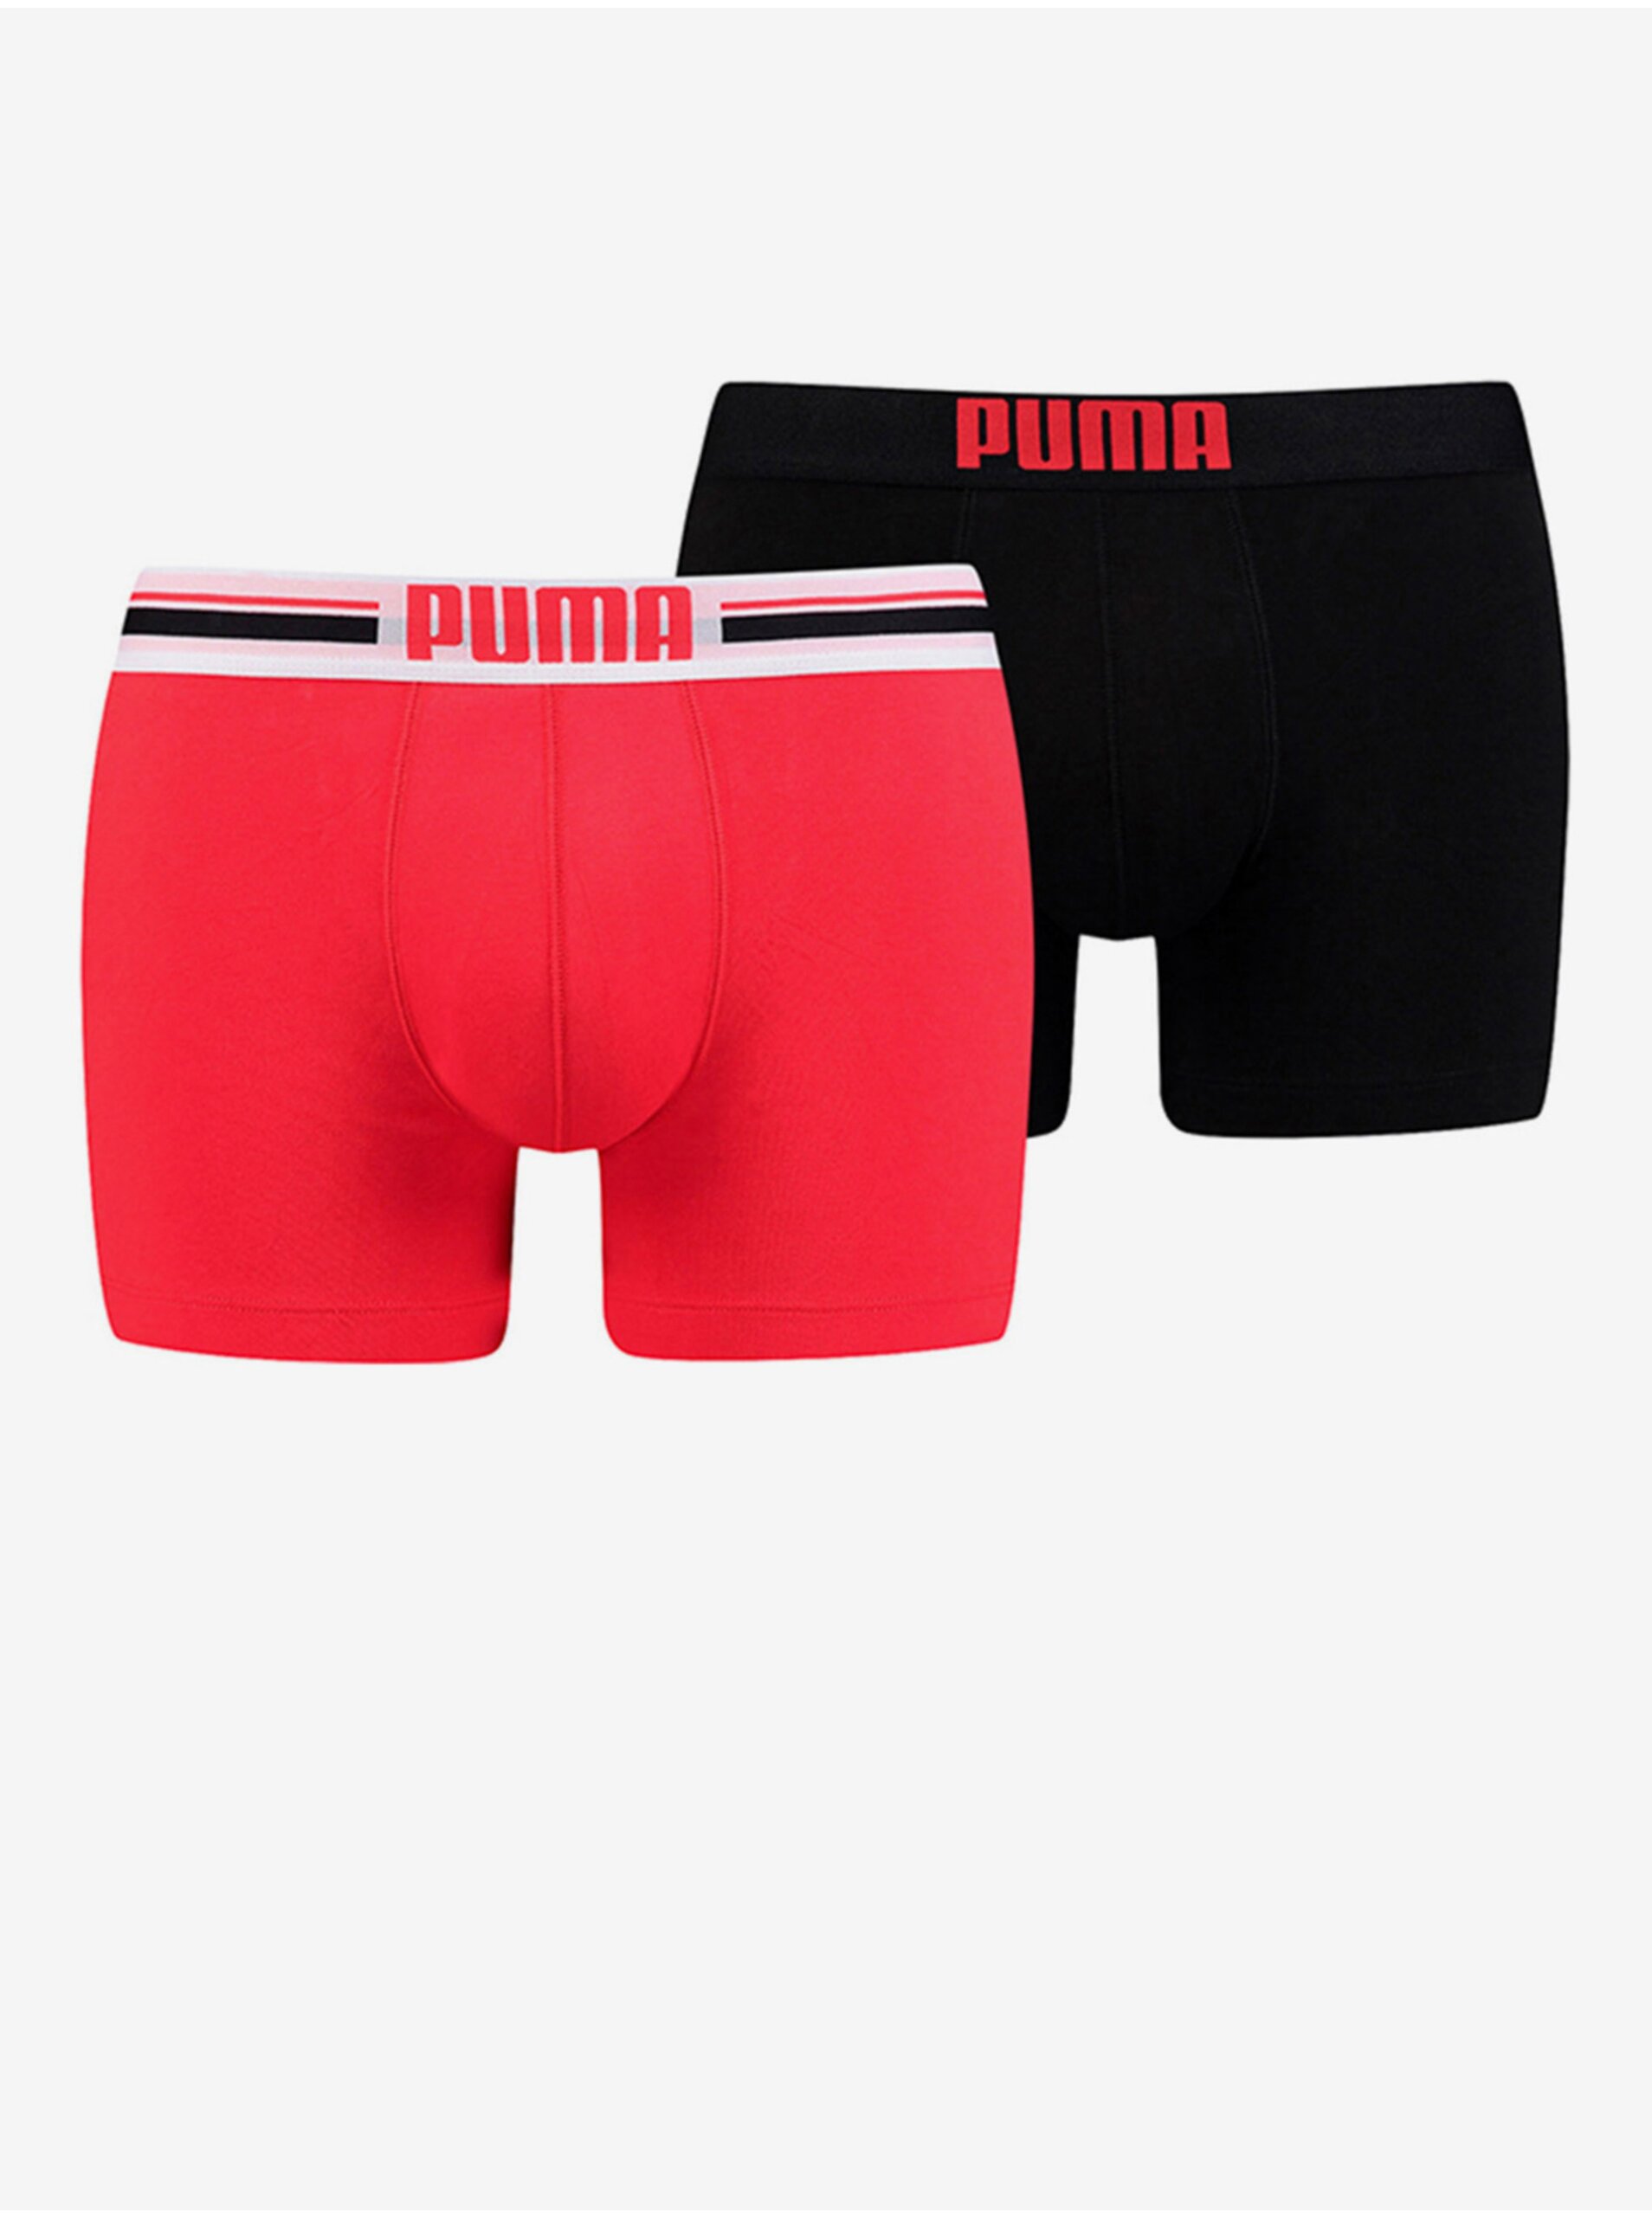 E-shop Sada dvoch pánskych boxerok v červenej a čiernej farbe Puma